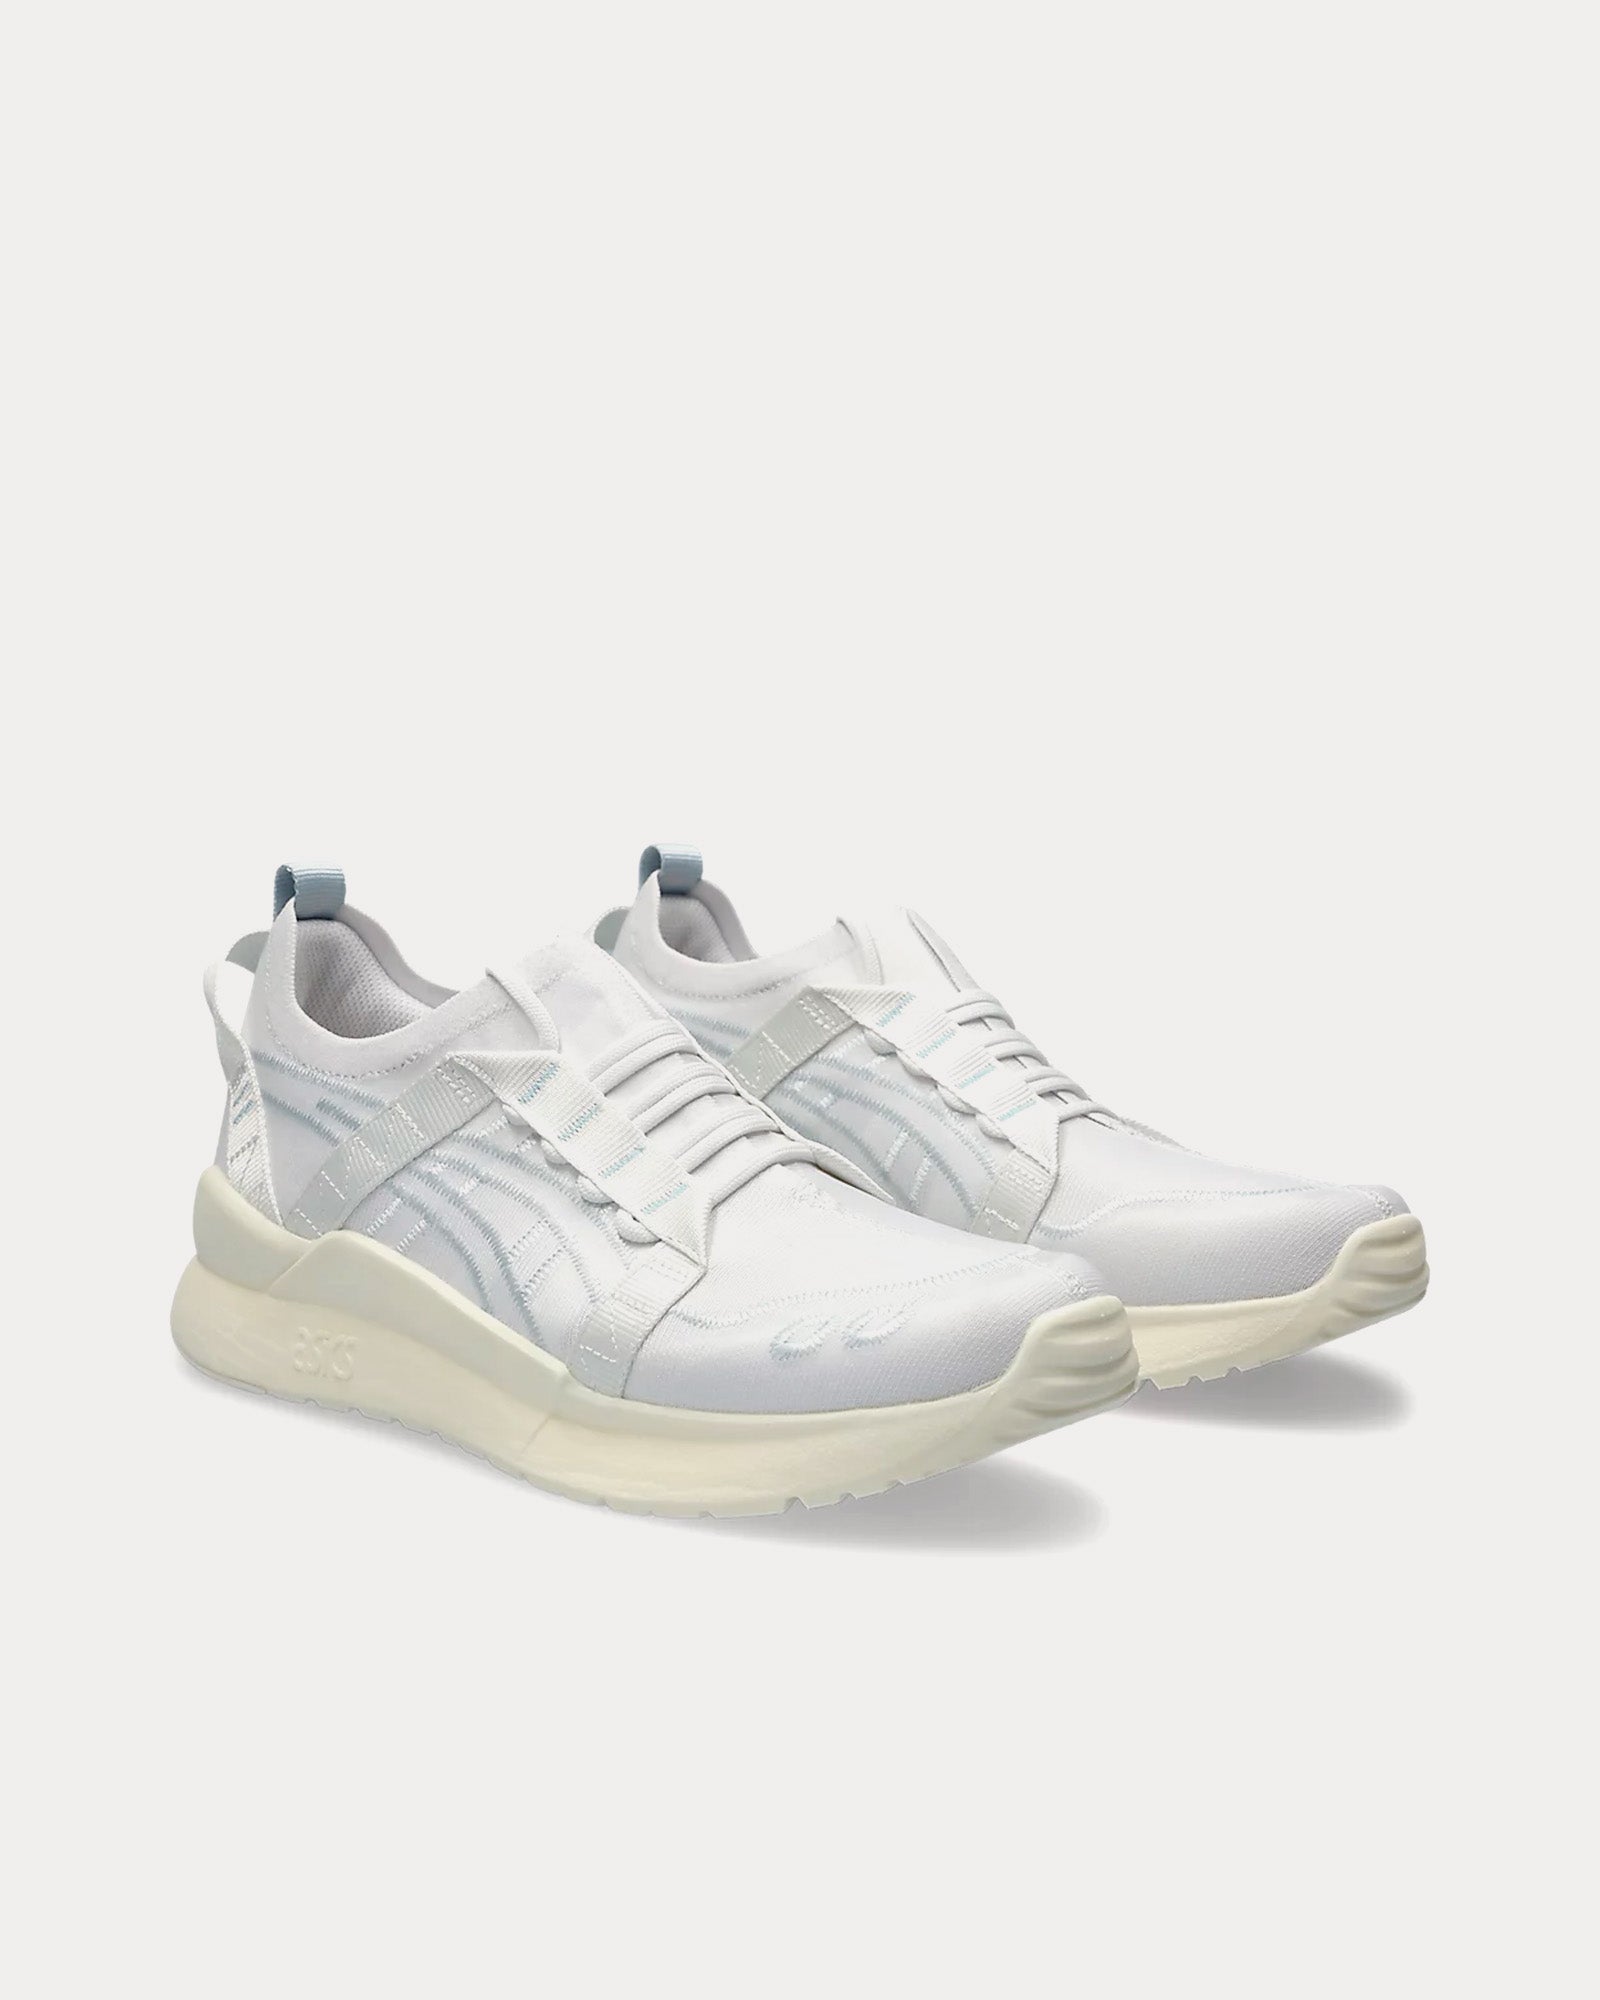 Asics x CFCL Gel-Lyte III CM 1.95 White / White Slip On Sneakers 